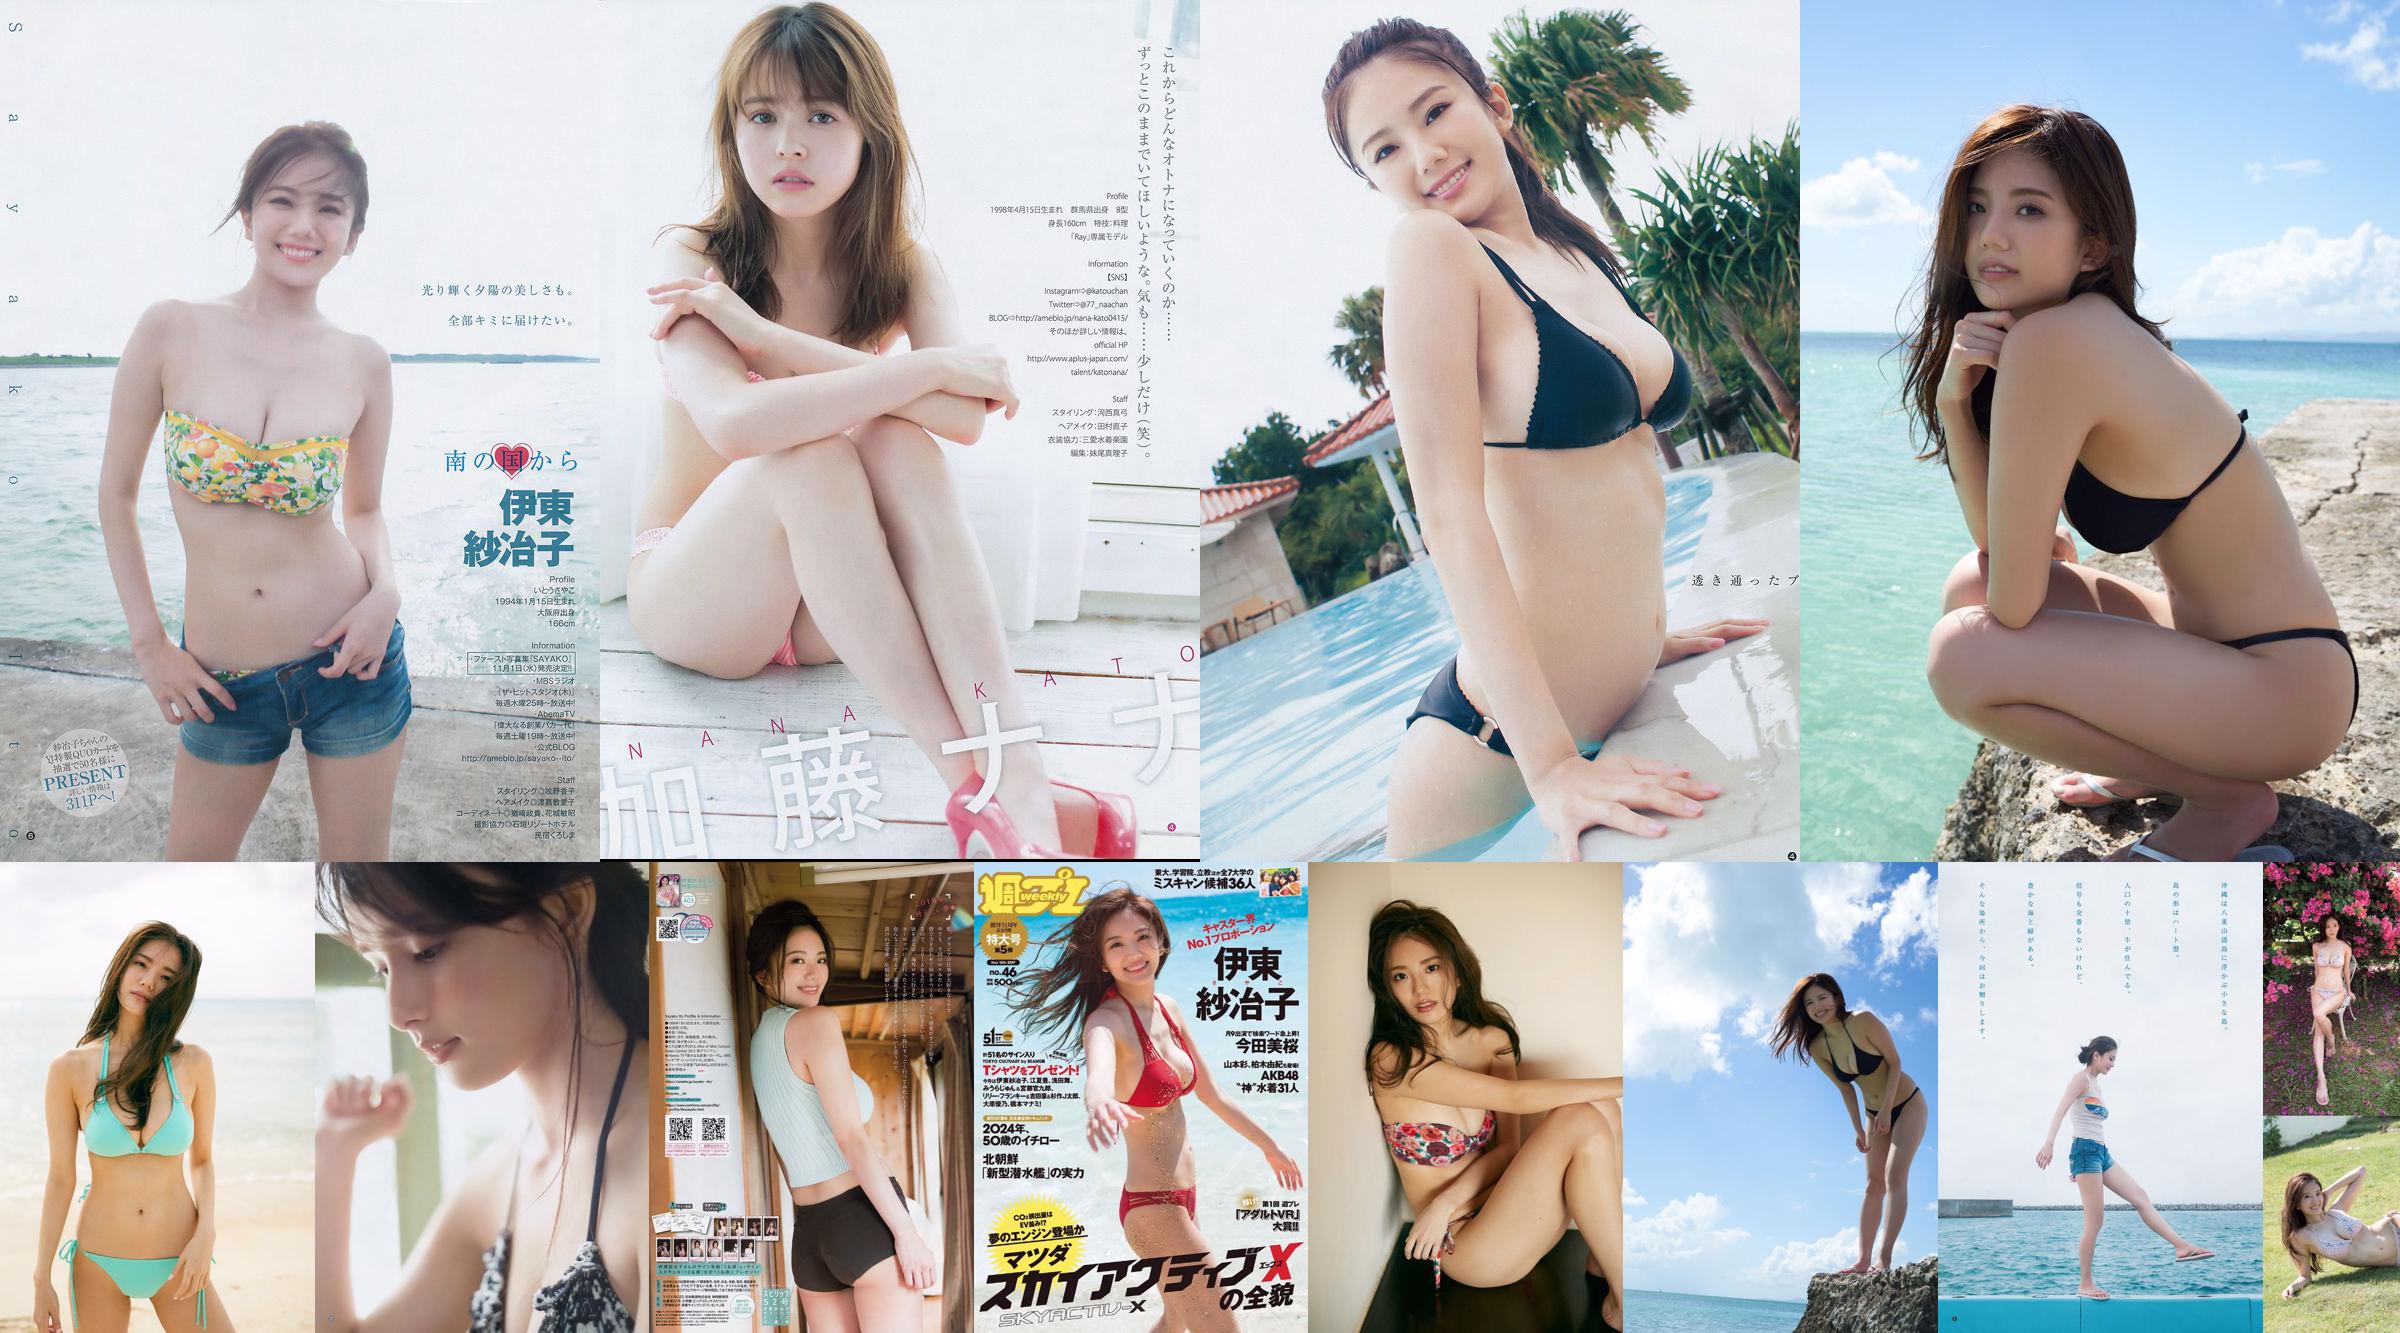 Ito Sayeko, Mima Reiko, Sugimoto Yumi, Sato Reina, Yoshiki りさ Toyama Akiko, Naninao [Weekly Playboy] 2016 No.36 Photo Magazine No.8b60c9 Pagina 6